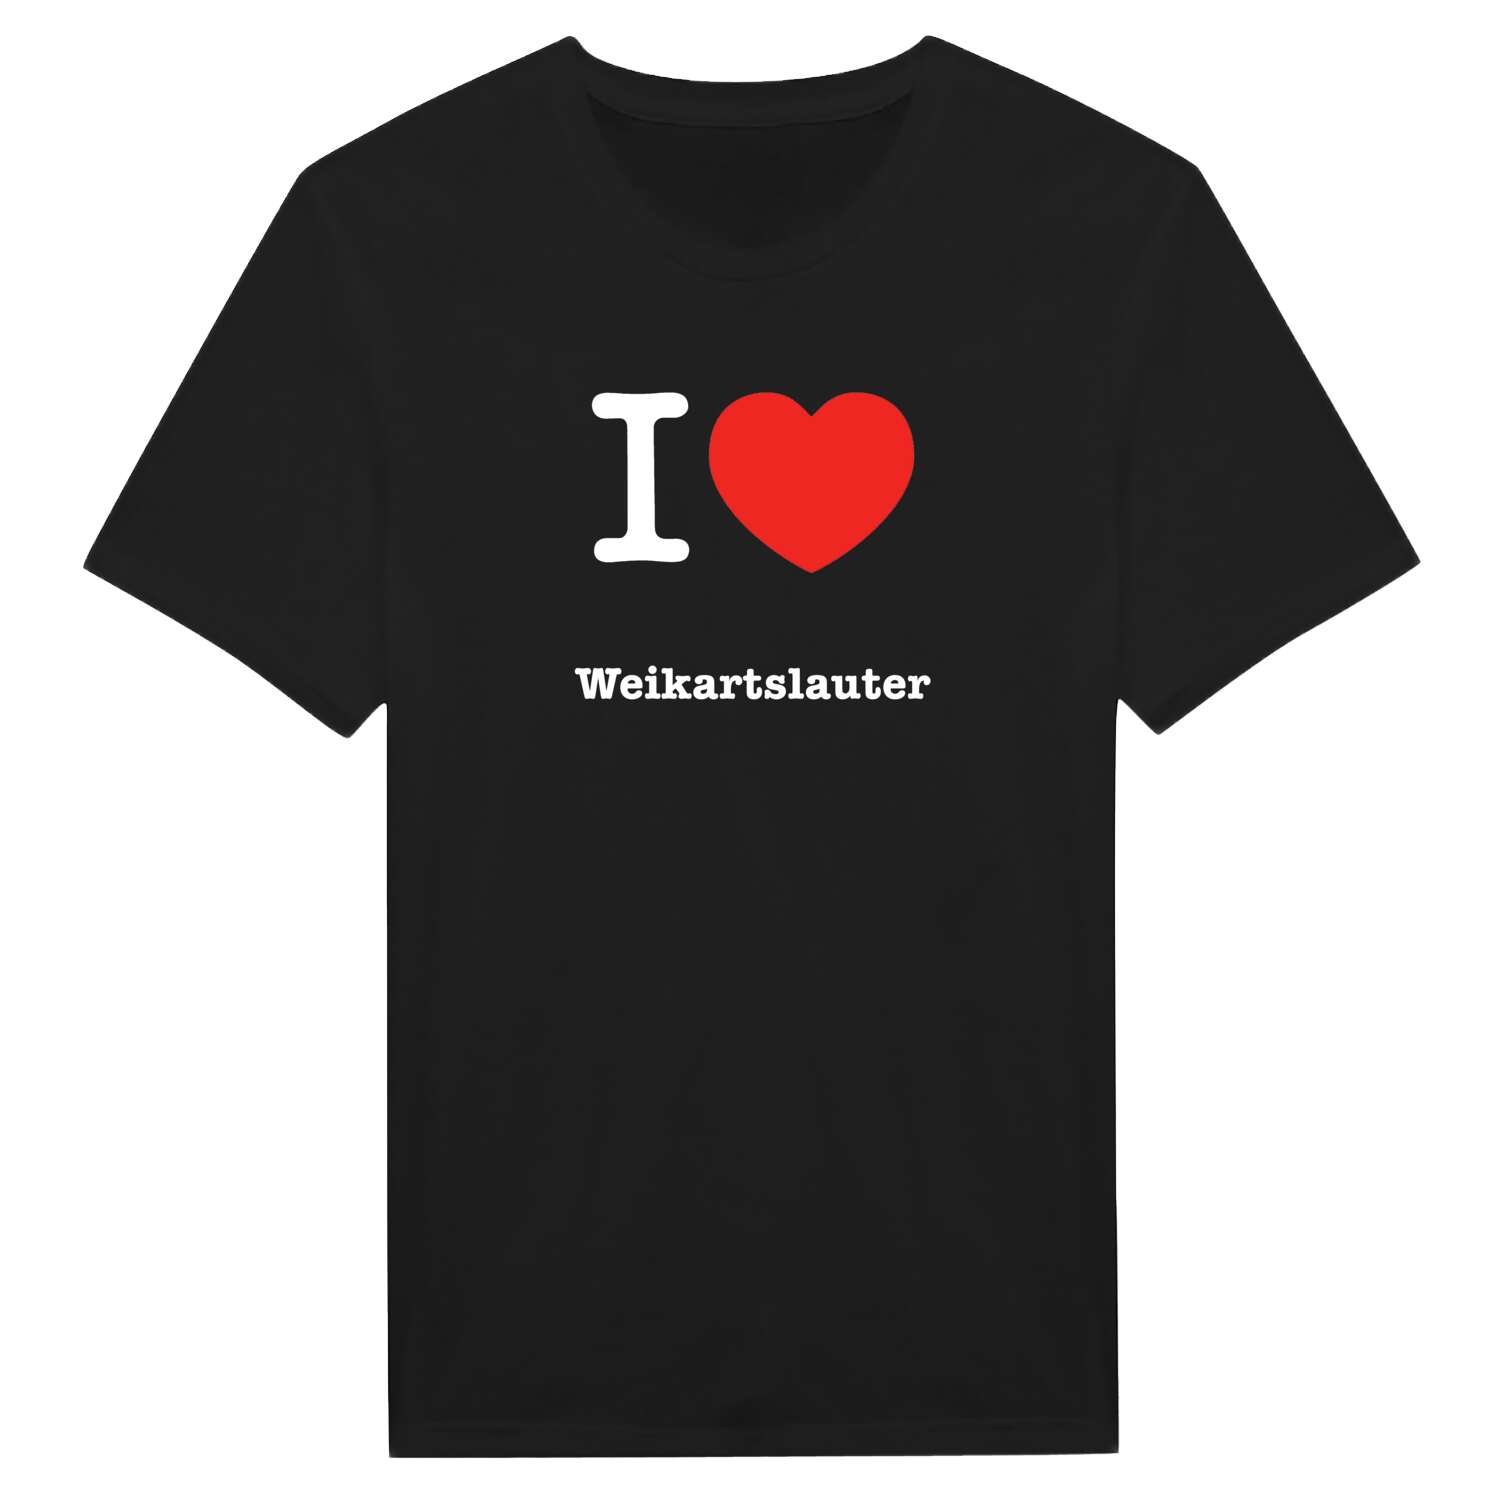 Weikartslauter T-Shirt »I love«